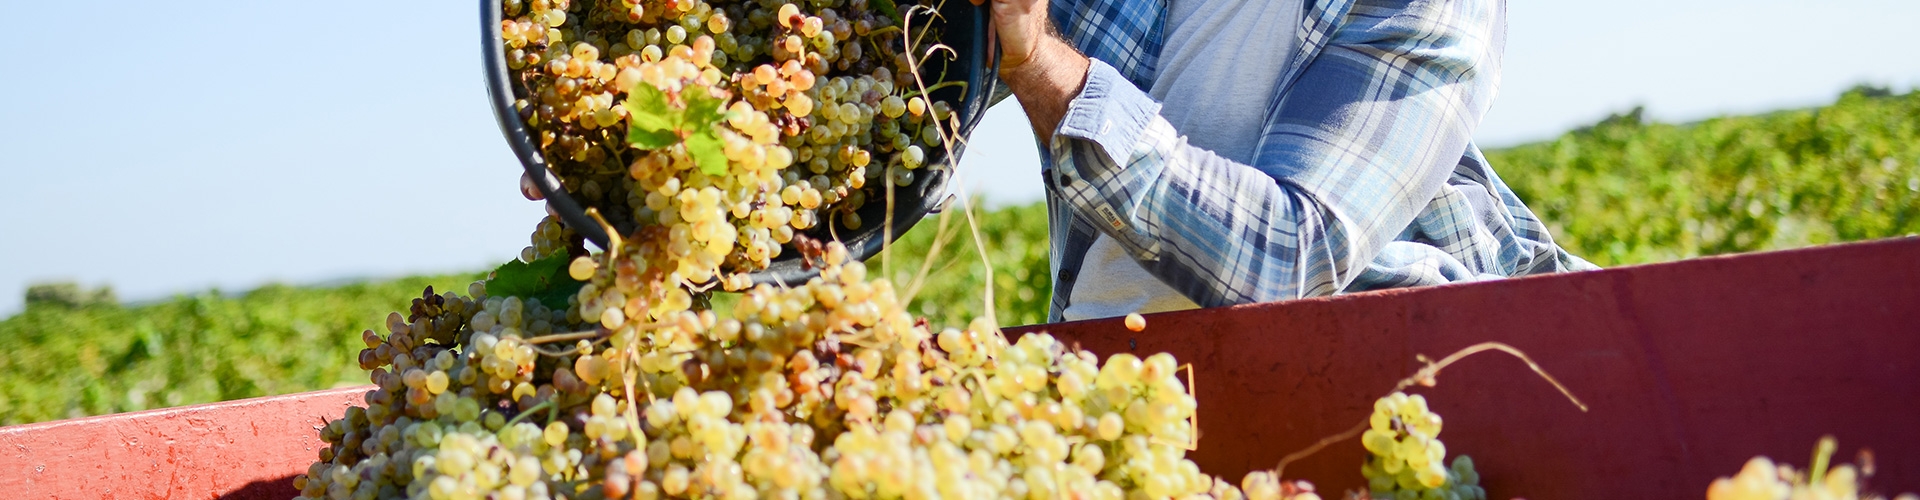 Seguro agrario especializado para uva de vinificación - Hombre en viñedo vestido con camisa de cuadros arrojando la cosecha de uva en depósito